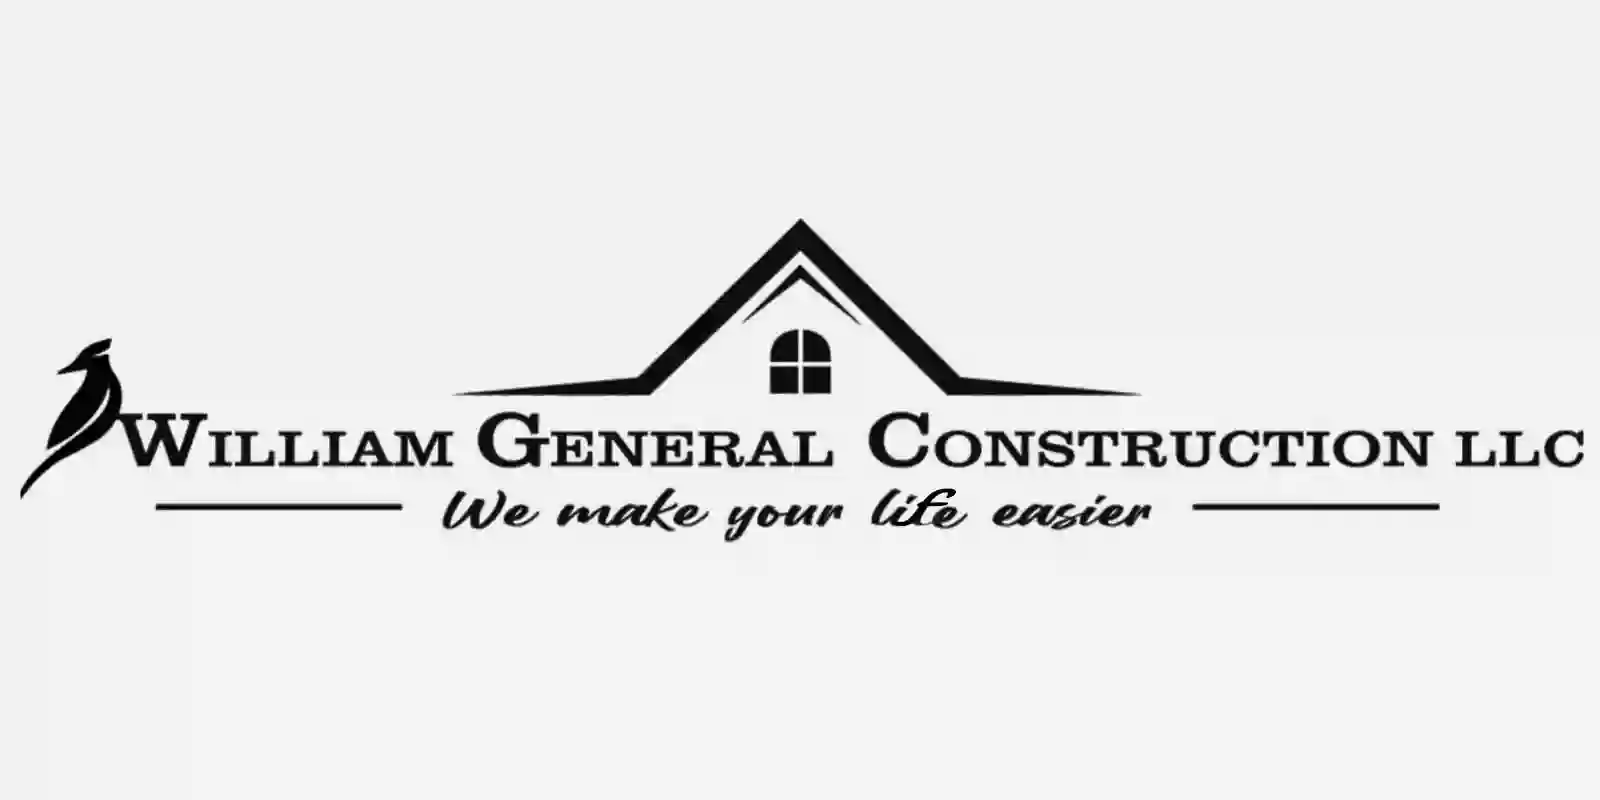 WILLIAM GENERAL CONSTRUCTION LLC